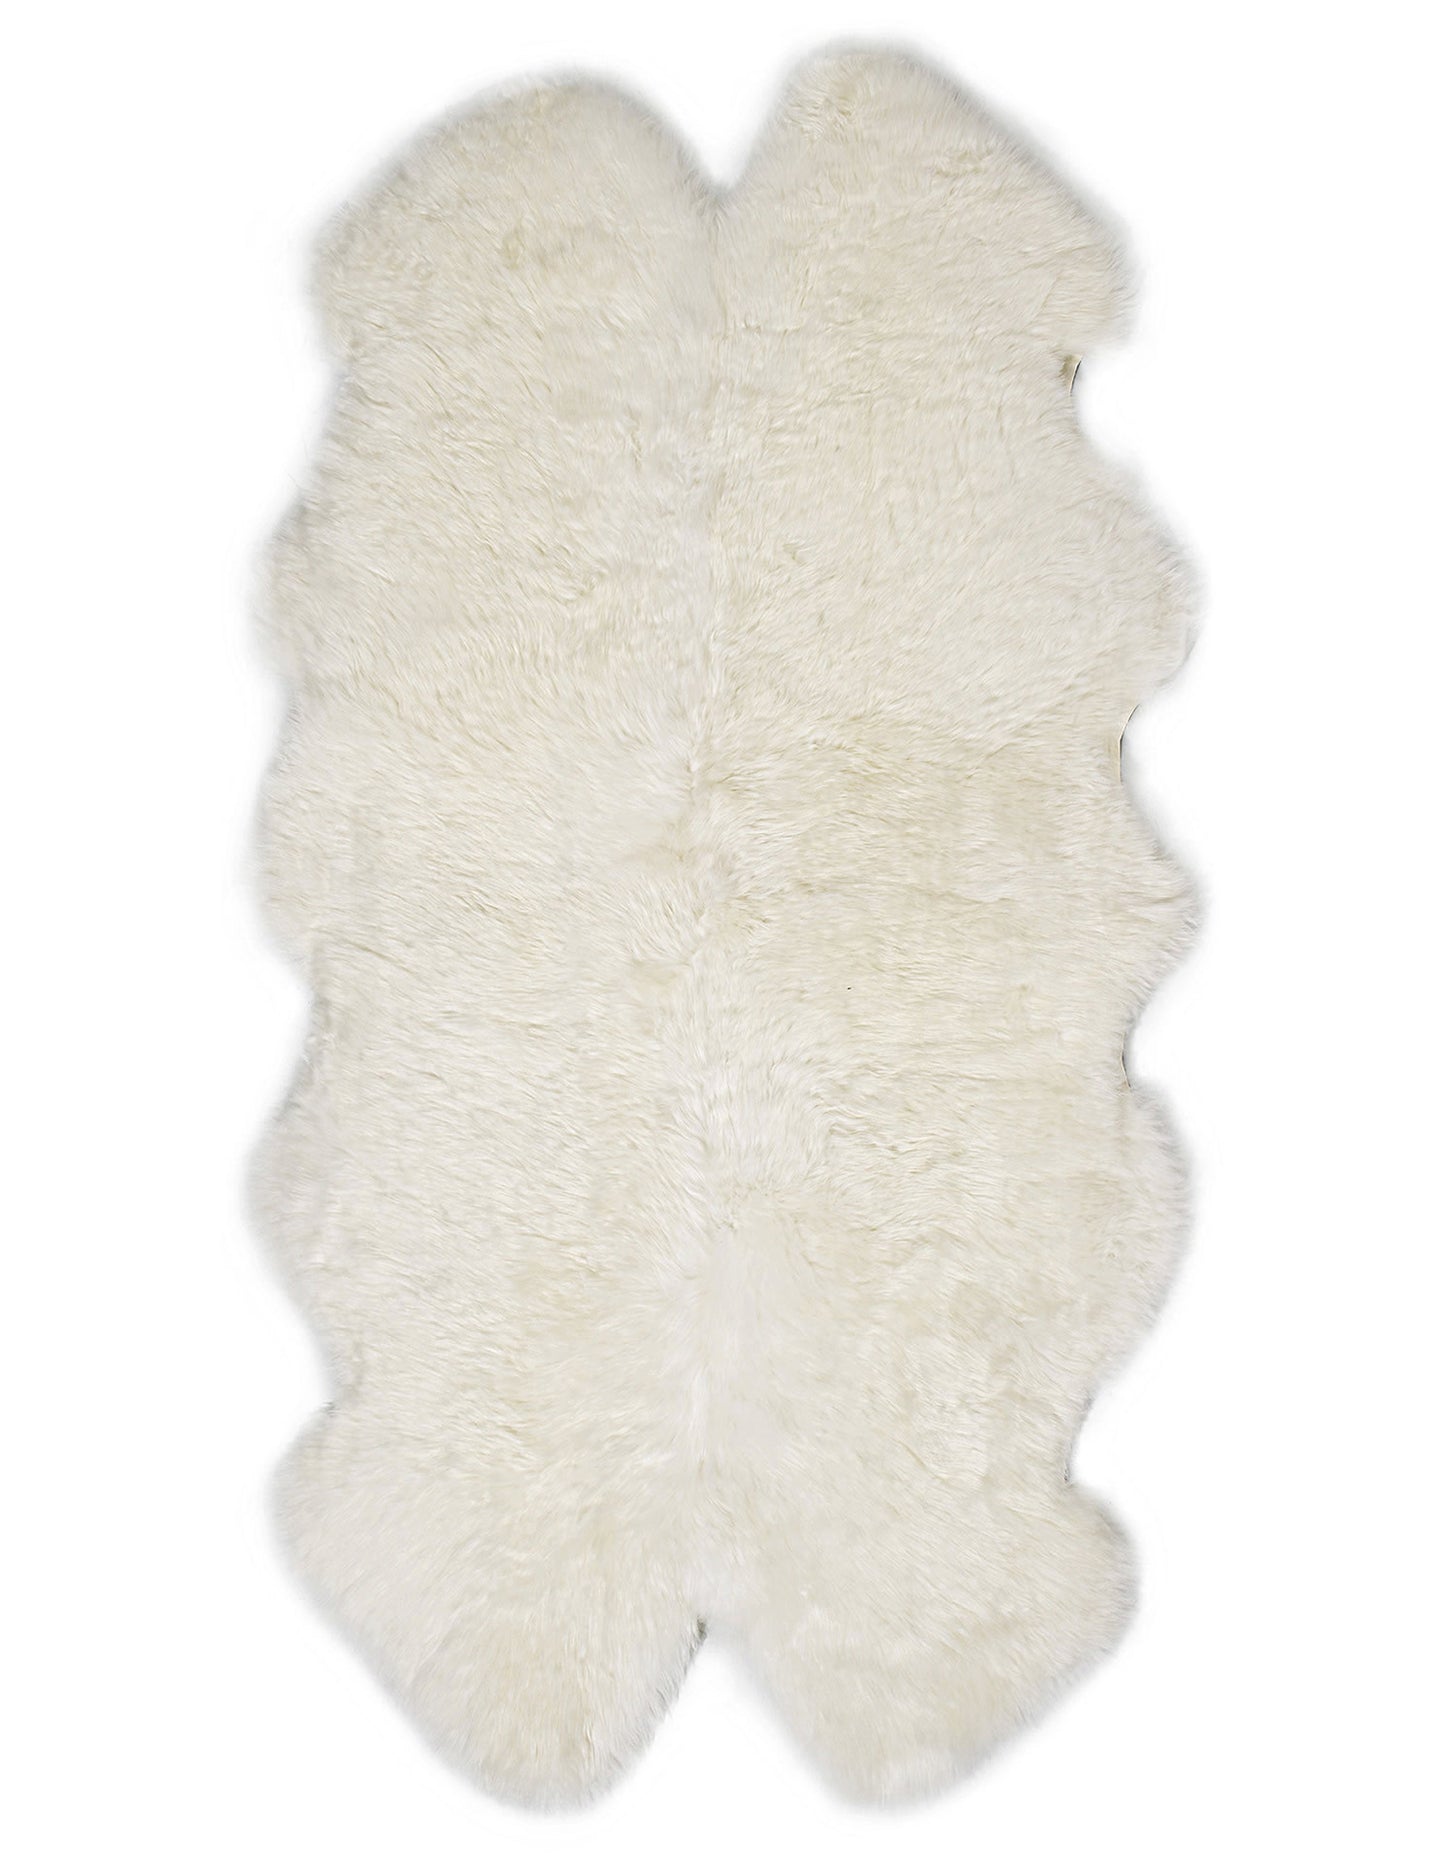 Ivory Quarto Sheepskin Rug